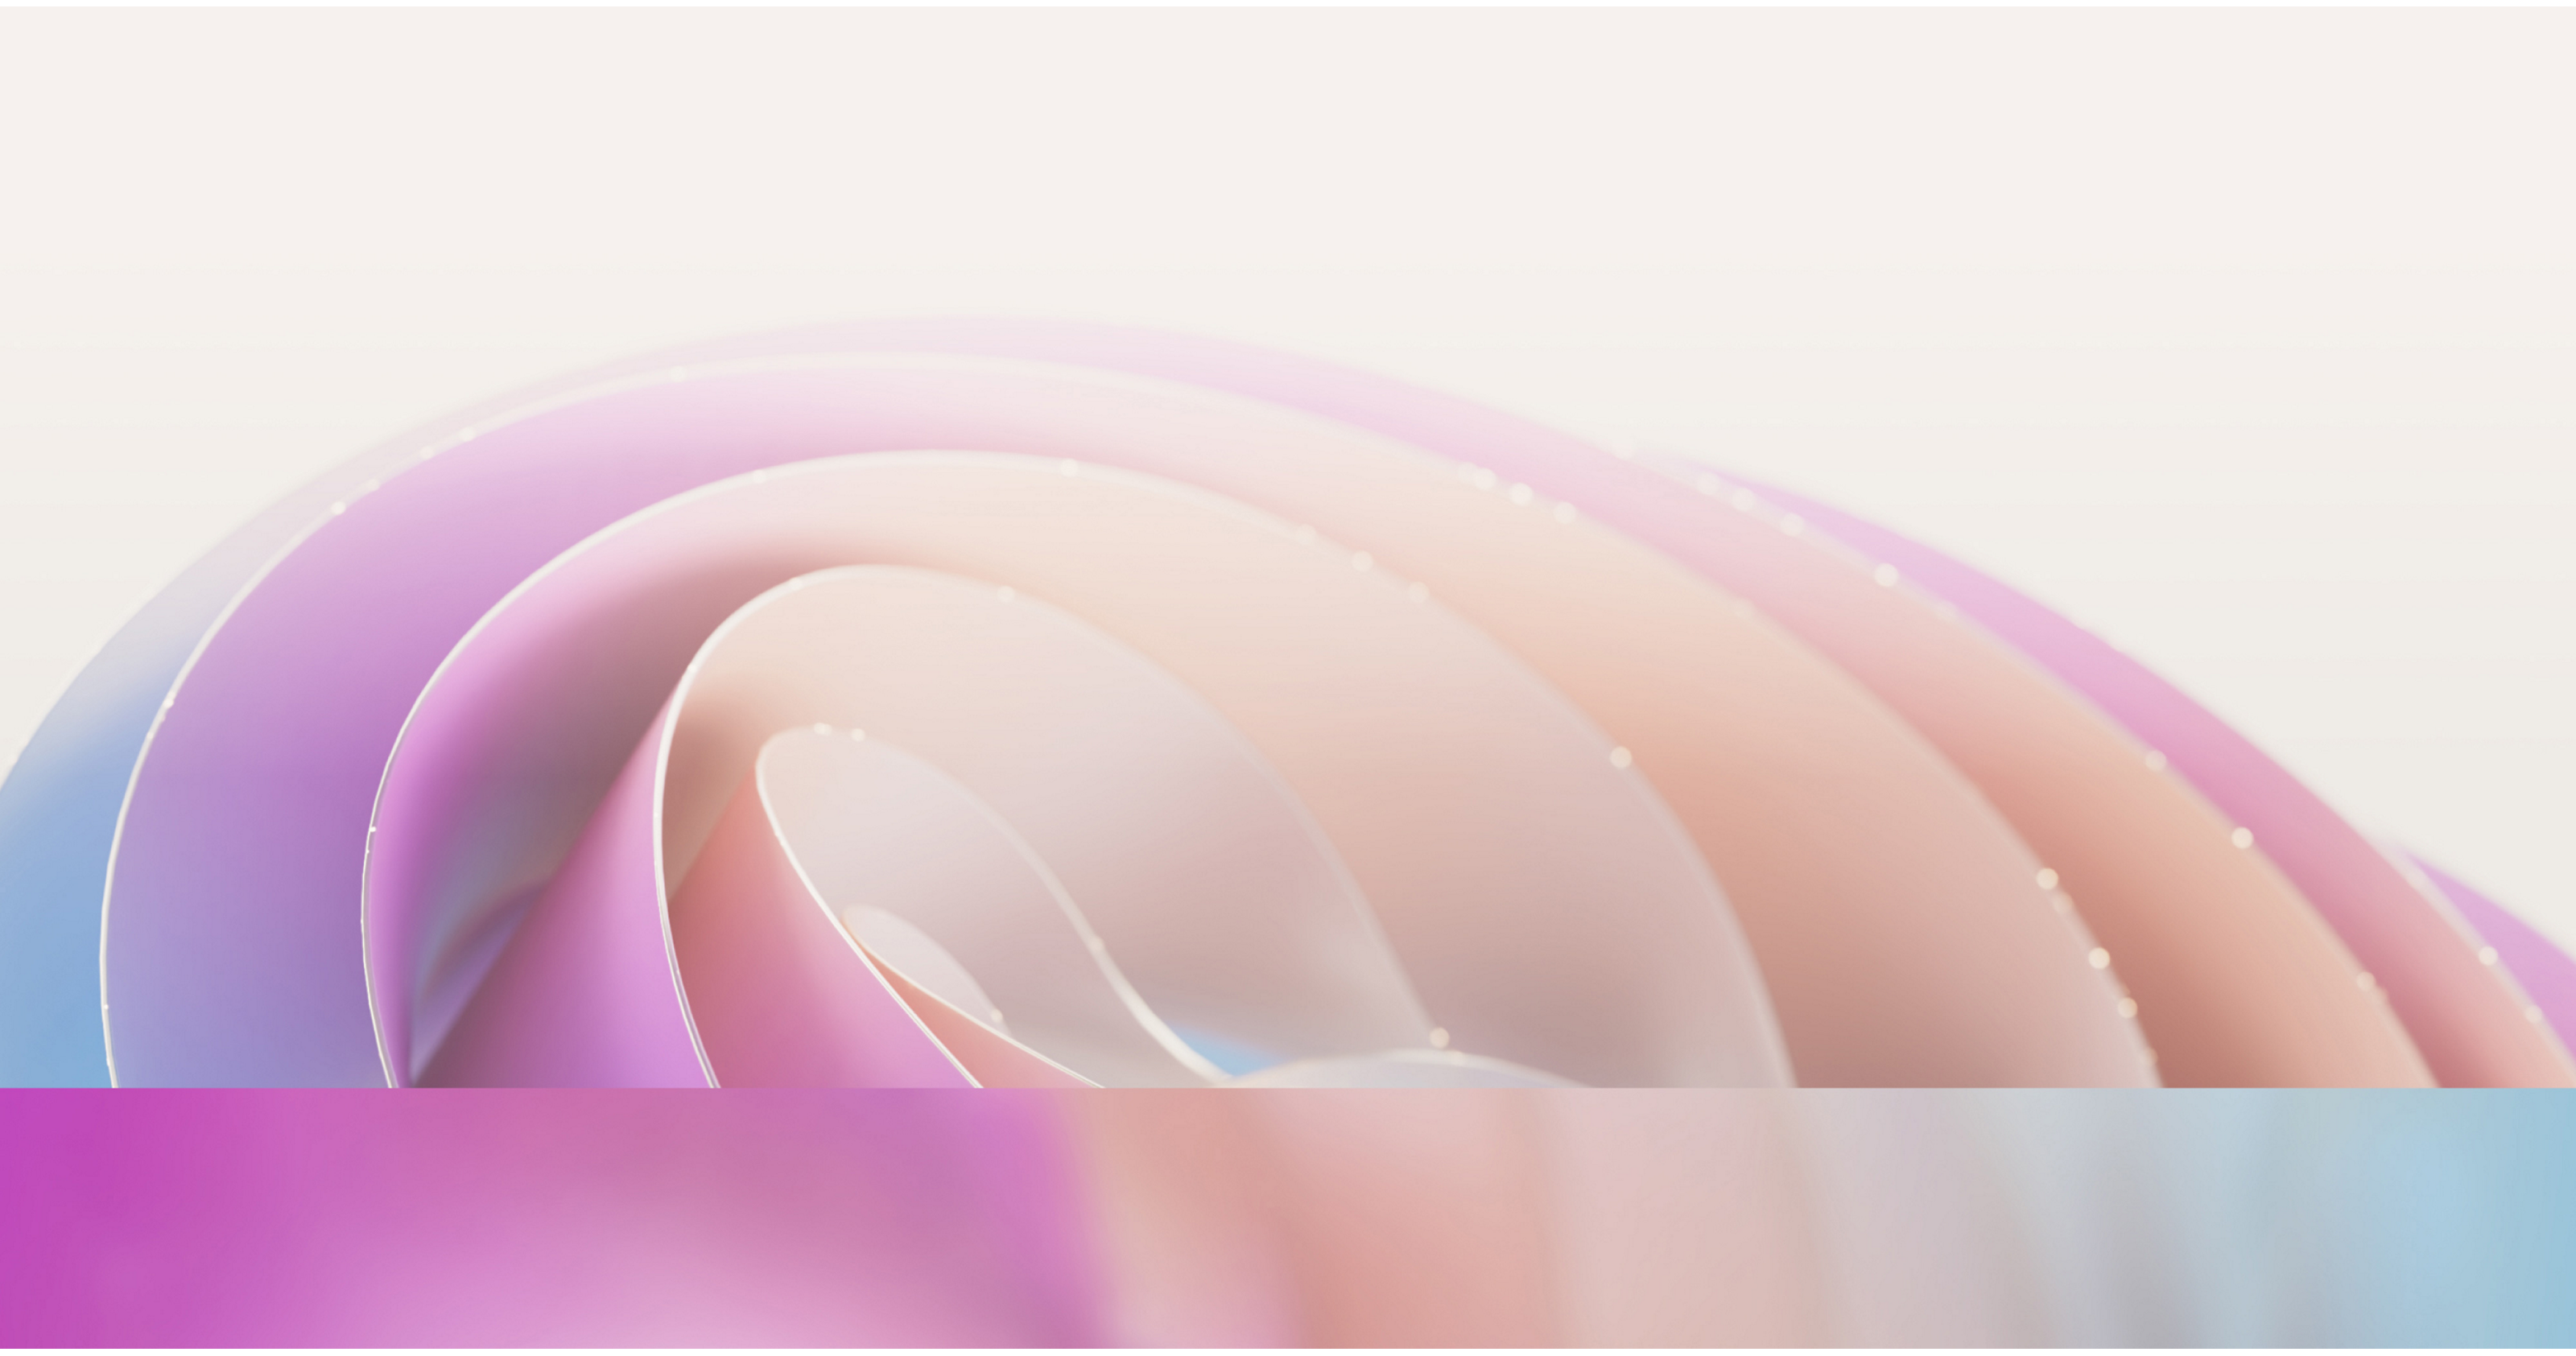 Imagen abstracta con curvas suaves y fluidas en tonos suaves rosas y púrpuras con un efecto sutil de diferenciación de luz.